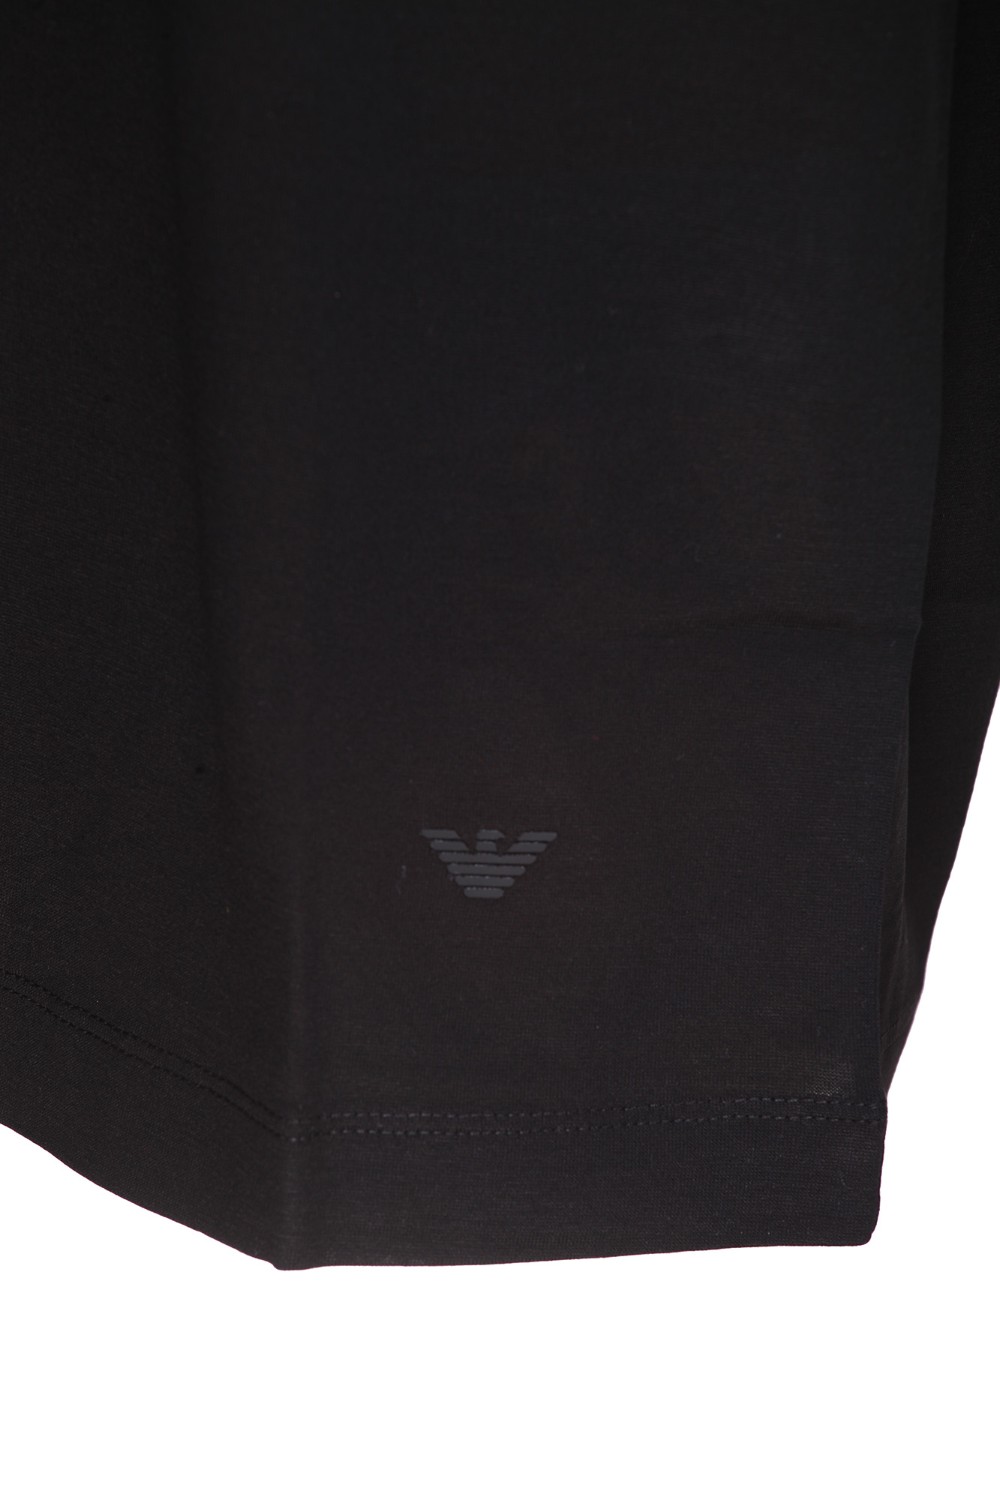 shop EMPORIO ARMANI  T-shirt: Emporio Armani t-shirt in cotone elasticizzato.
Scollo rotondo.
Maniche corte.
Composizione: 70% lyocell 30% cotone.
Fabbricato in Vietnam.. 8N1TE8 1JUVZ-0999 number 3686144